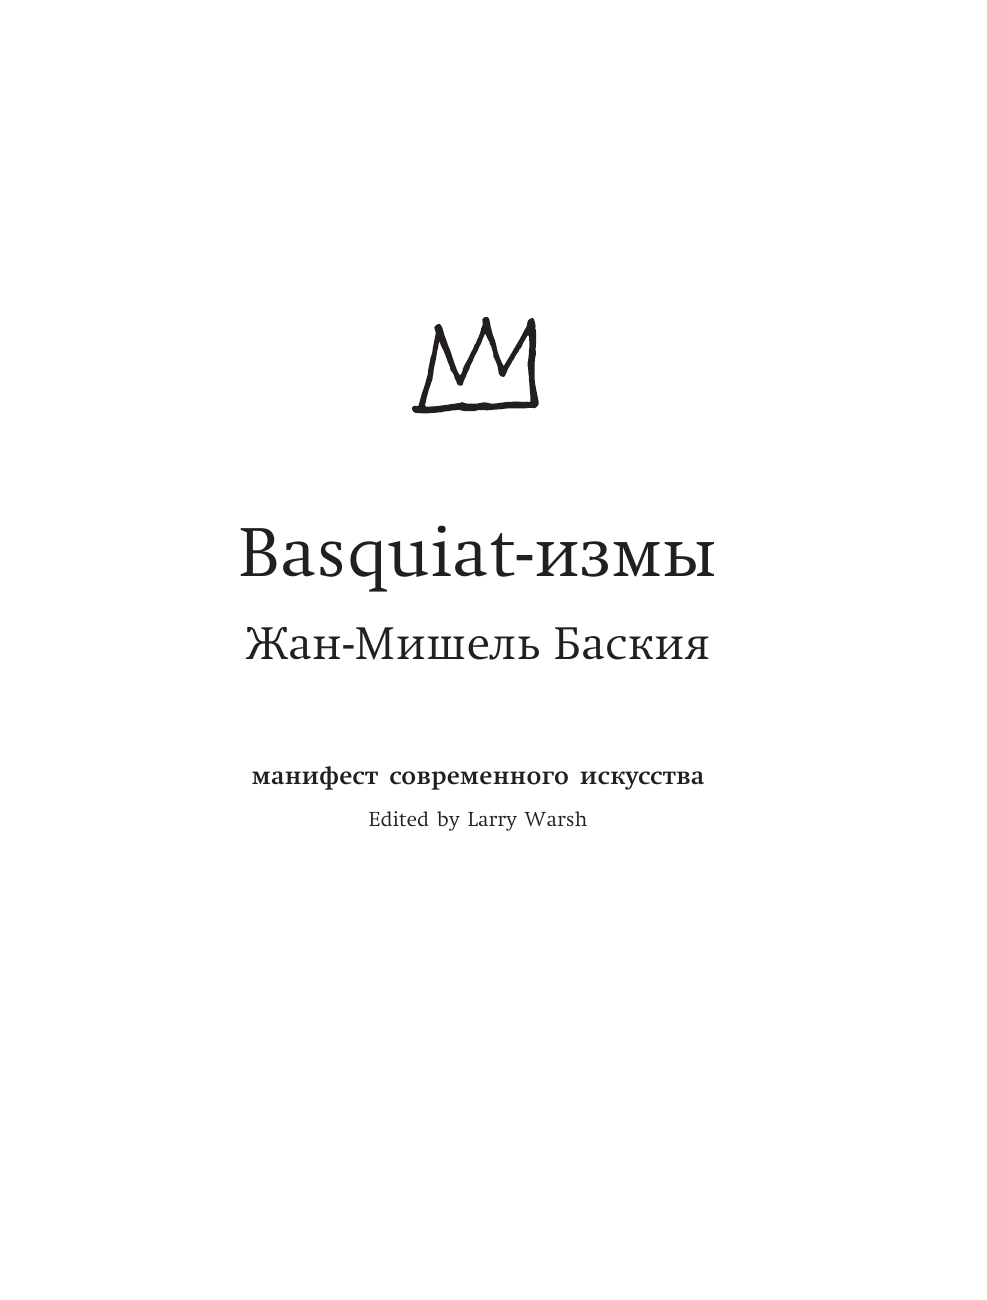 Баския Жан-Мишель Basquiat-измы - страница 4